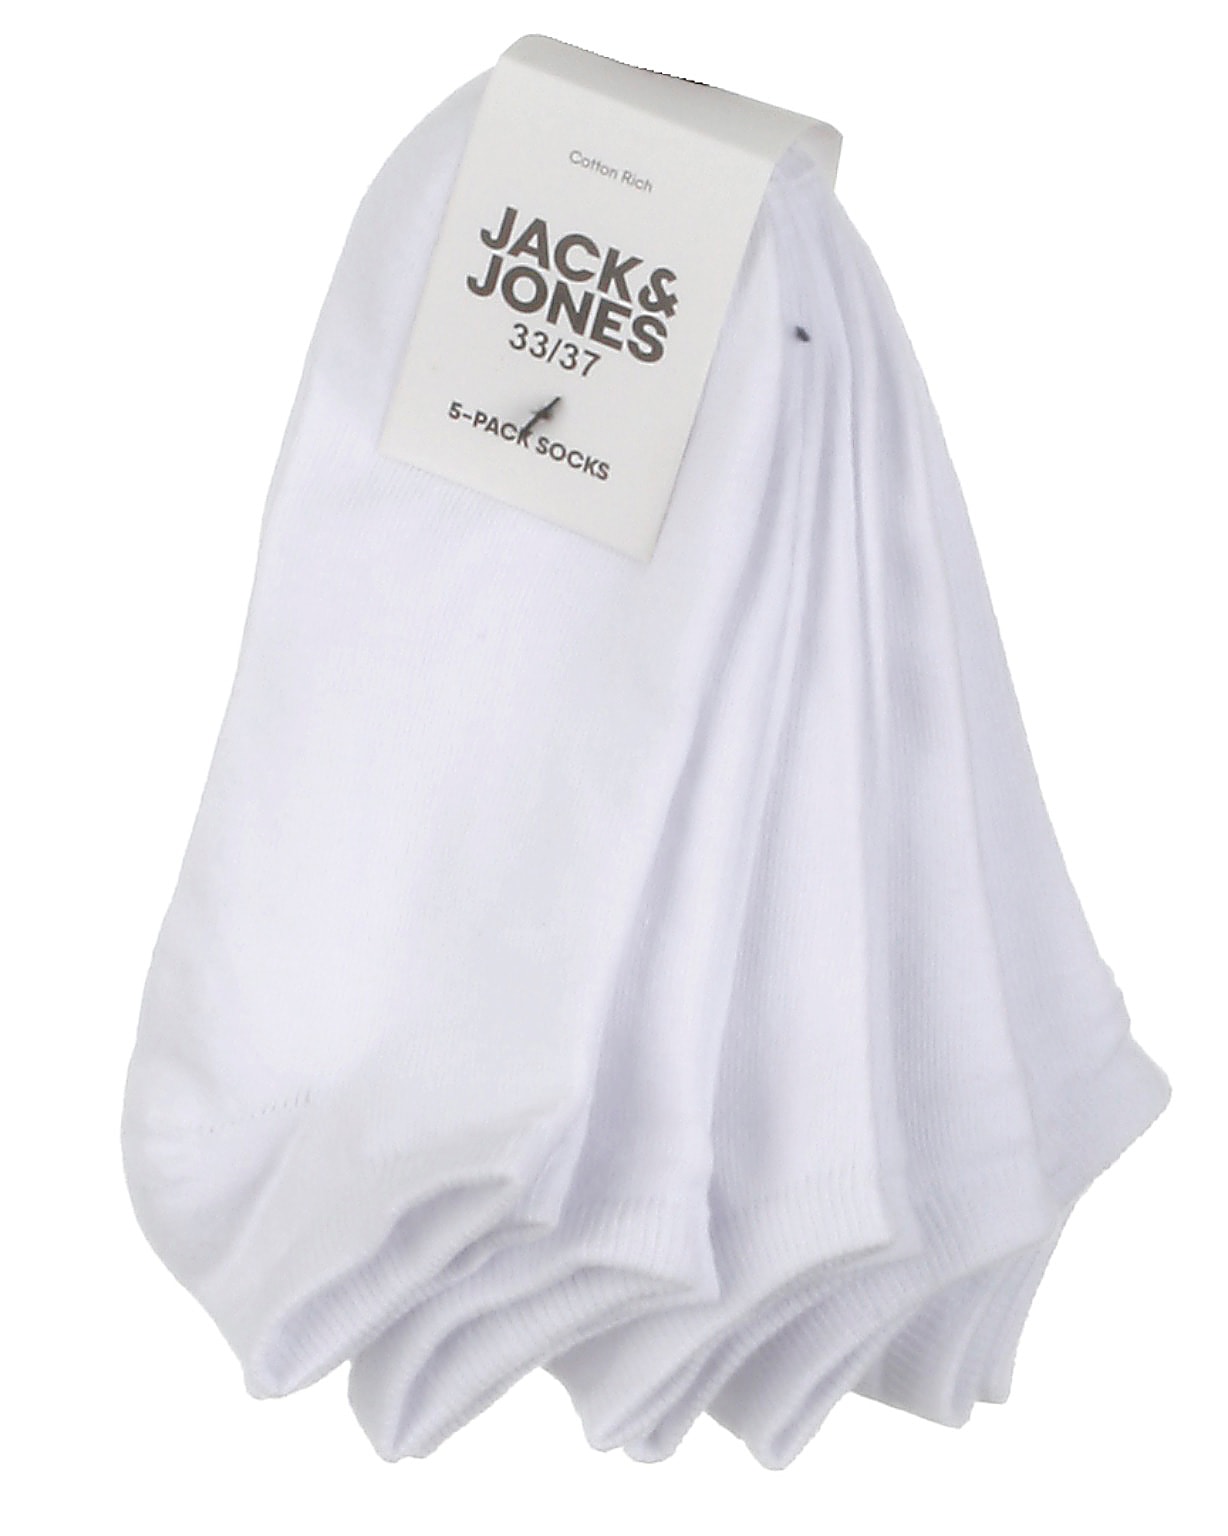 Jack & Jones JR 5-pak footies, Dongo, hvid - 35+,33/37